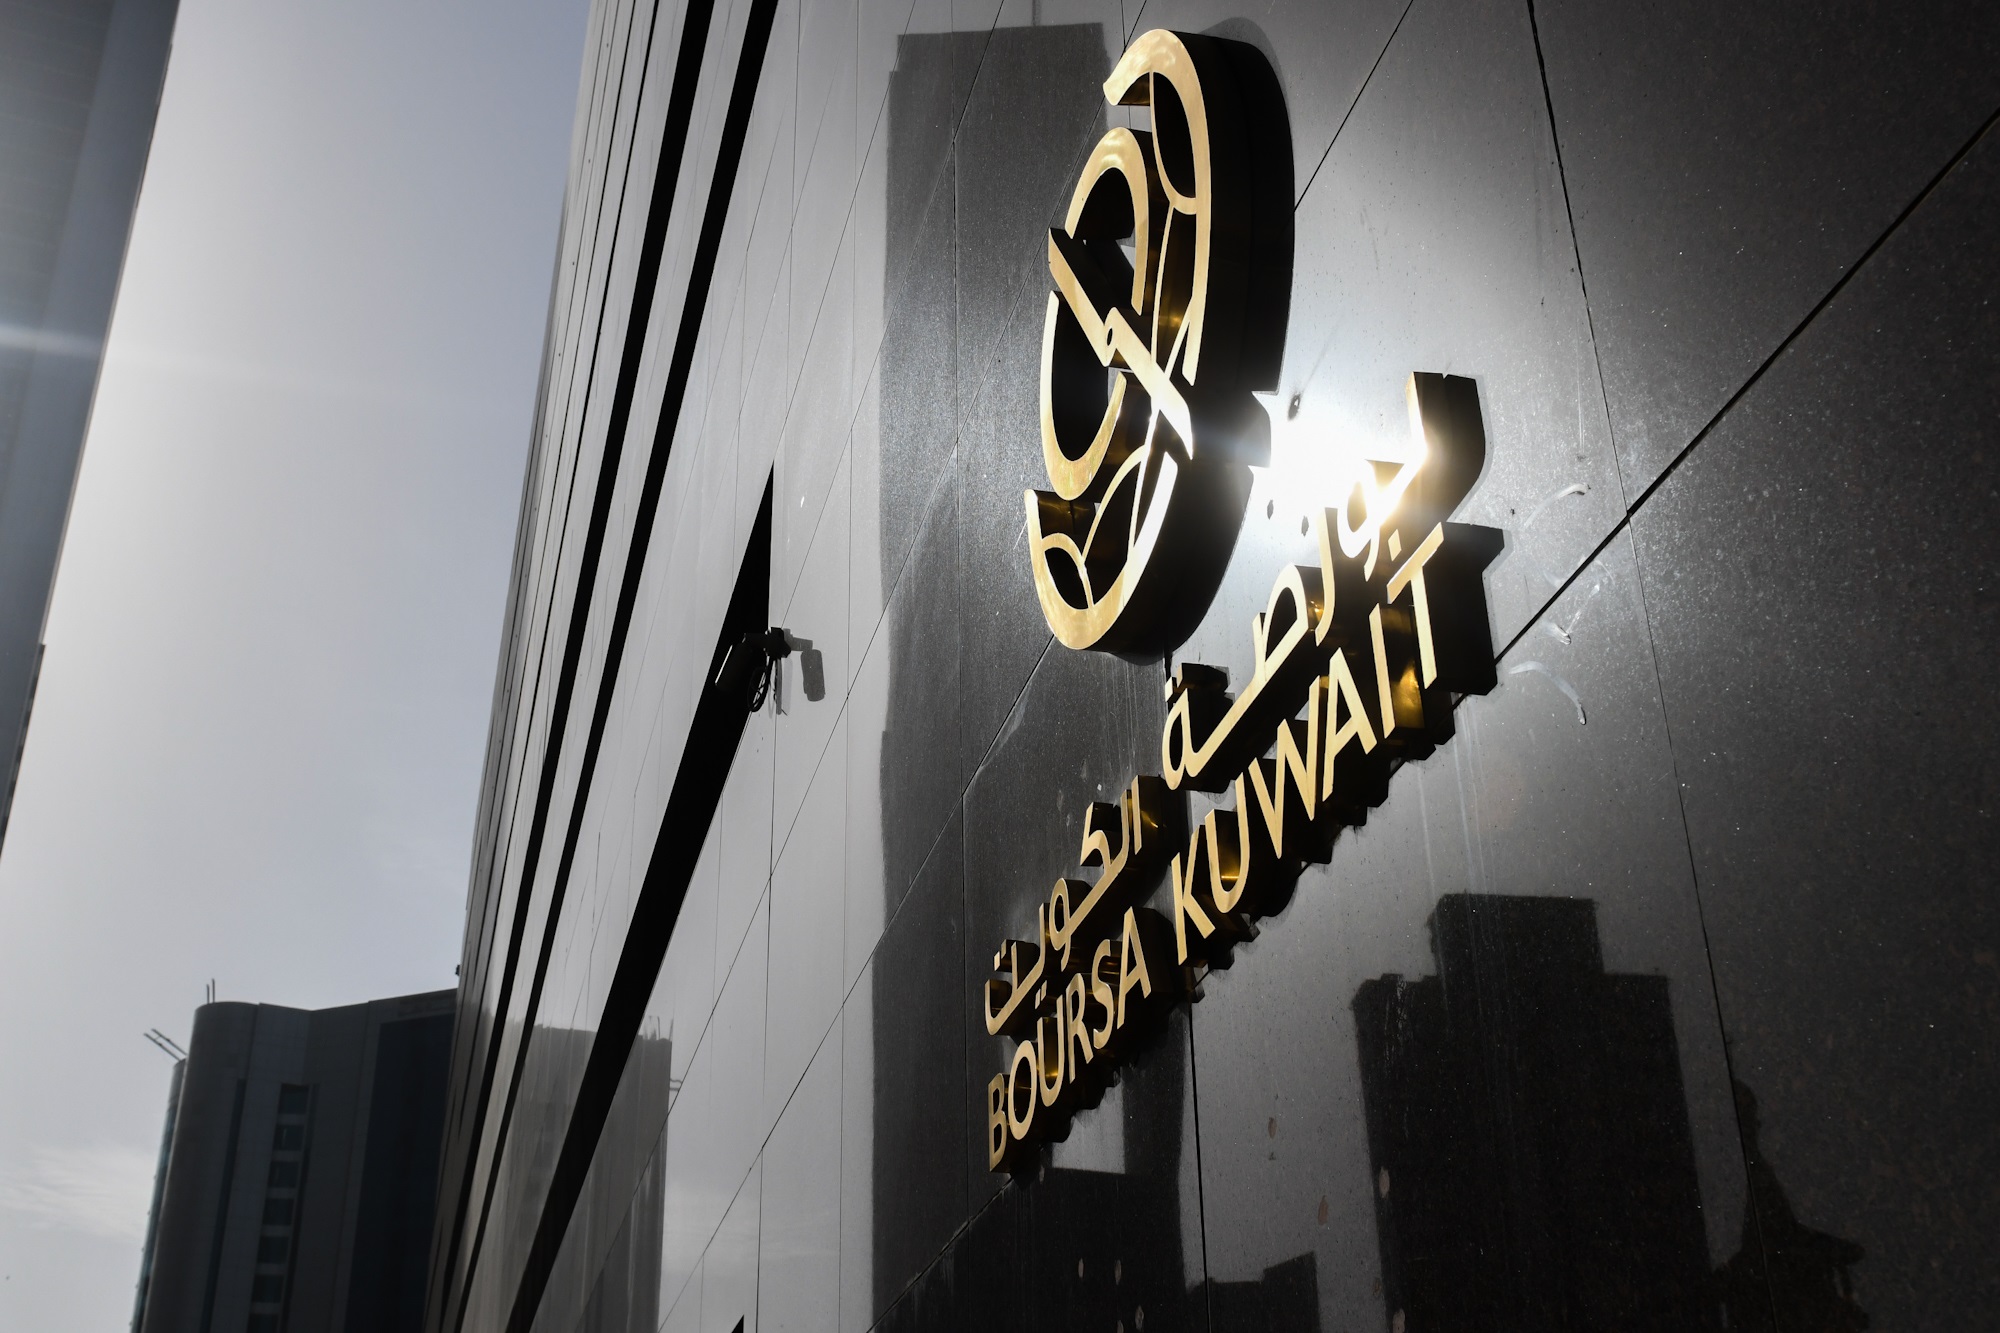 بورصة الكويت تغلق تعاملاتها على ارتفاع مؤشرها العام 7ر6 نقطة ليبلغ 51ر7057 بنسبة 10ر0 بالمئة                                                                                                                                                              